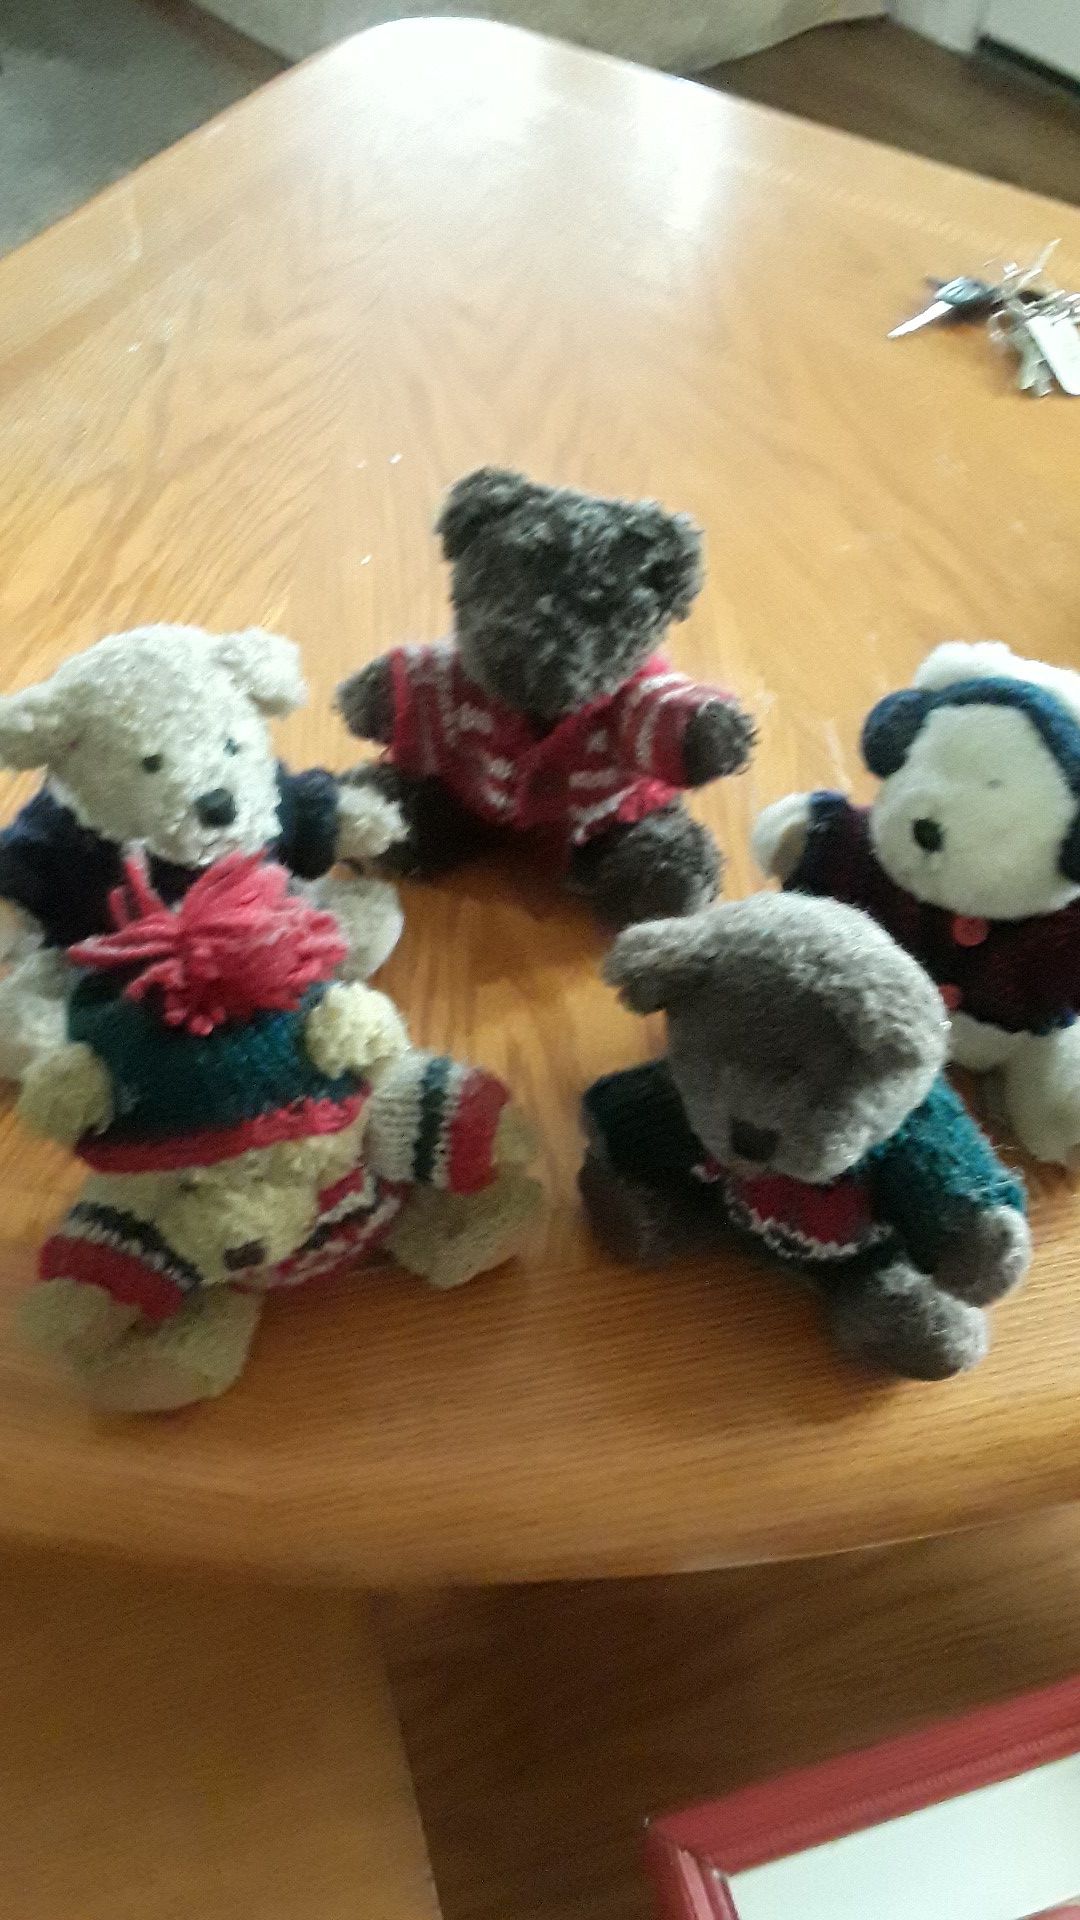 Small teddy bears...